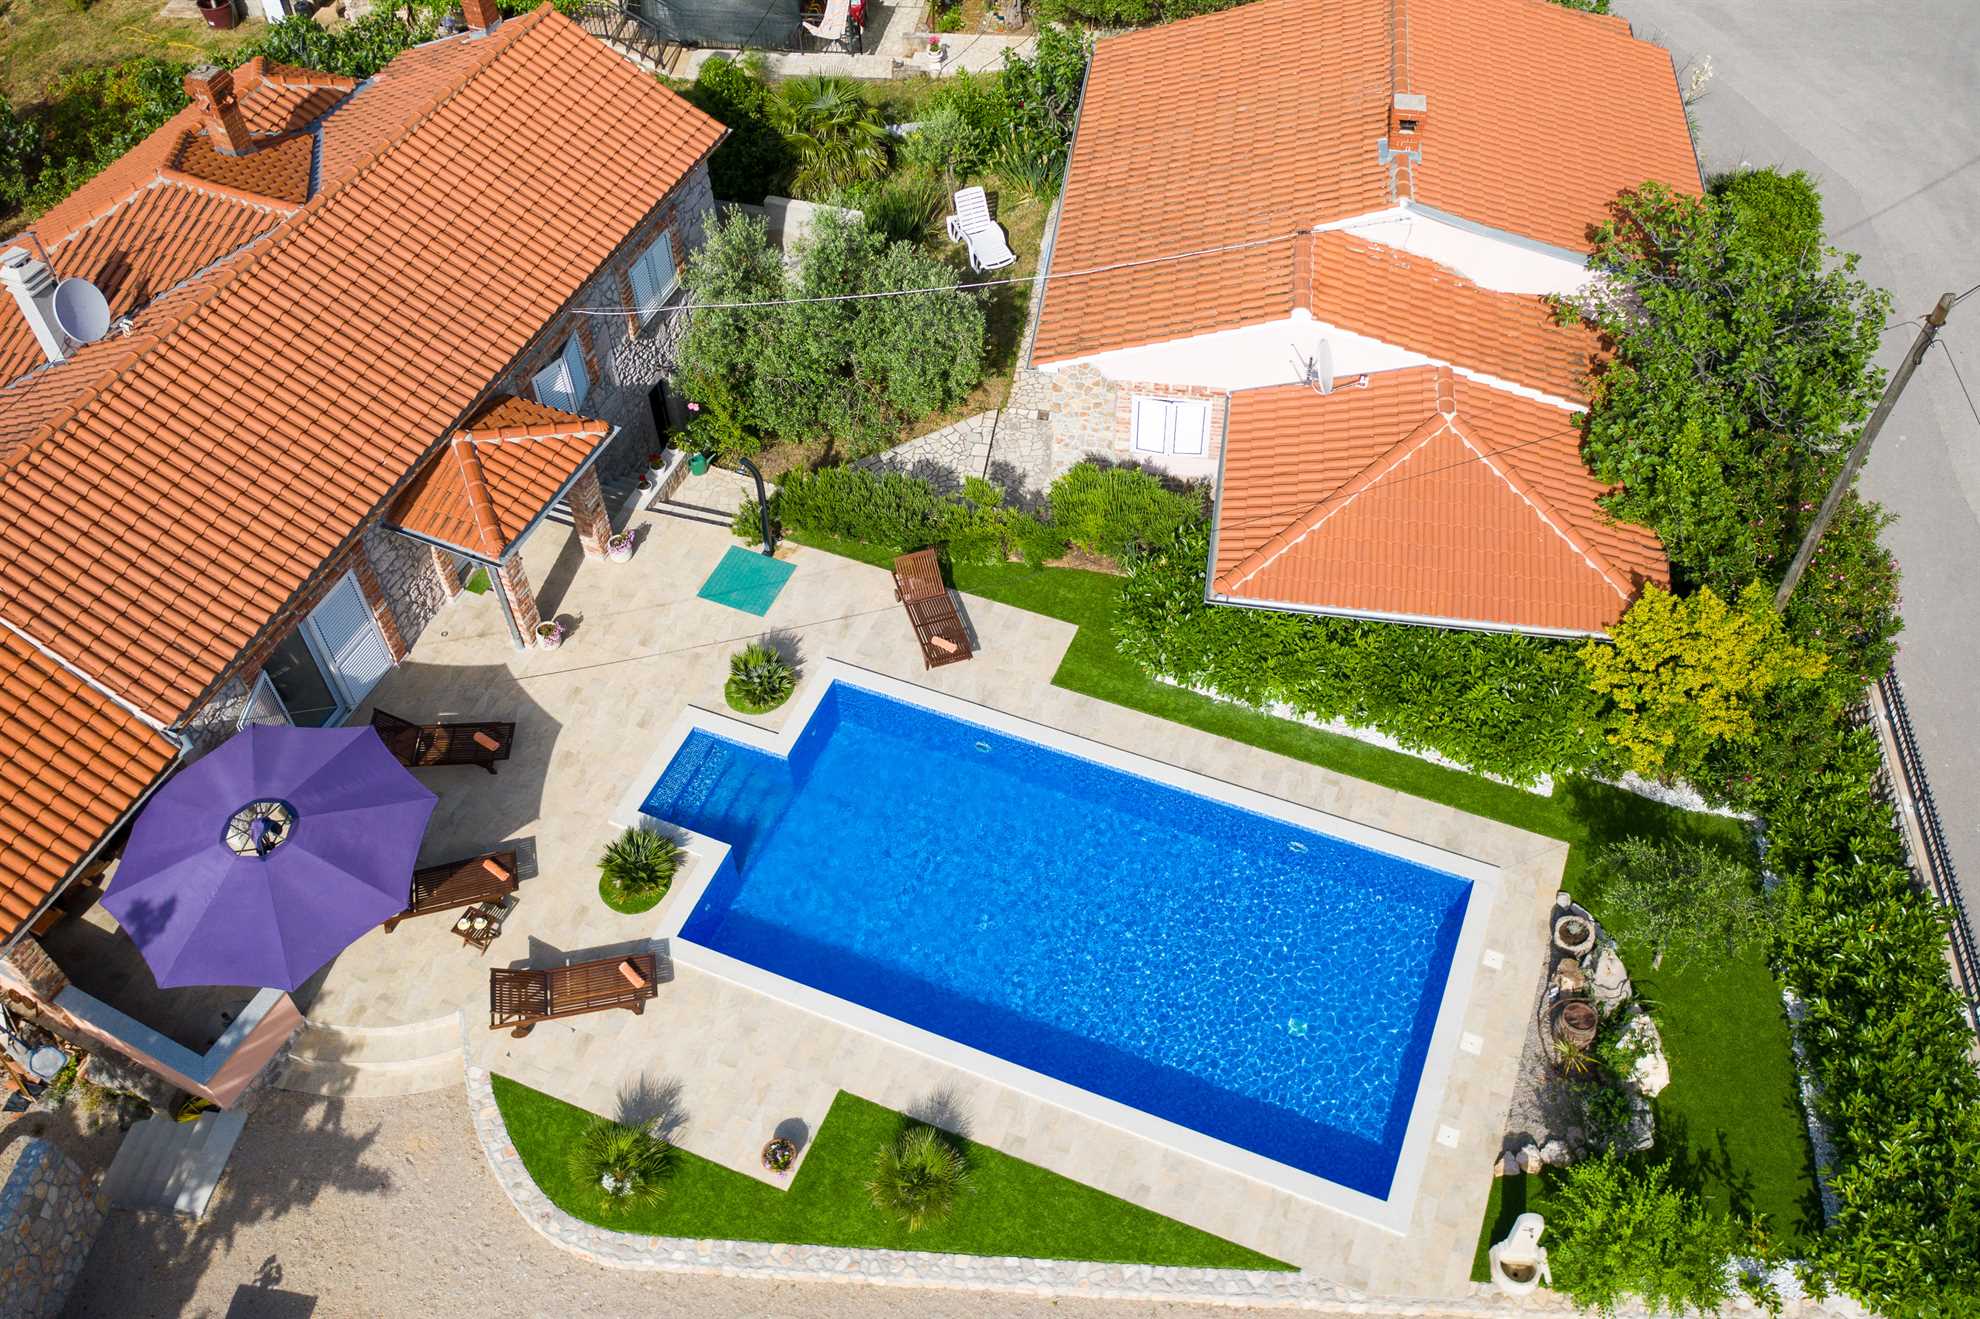 Beautiful villa Maja with pool, sauna and jacuzzi